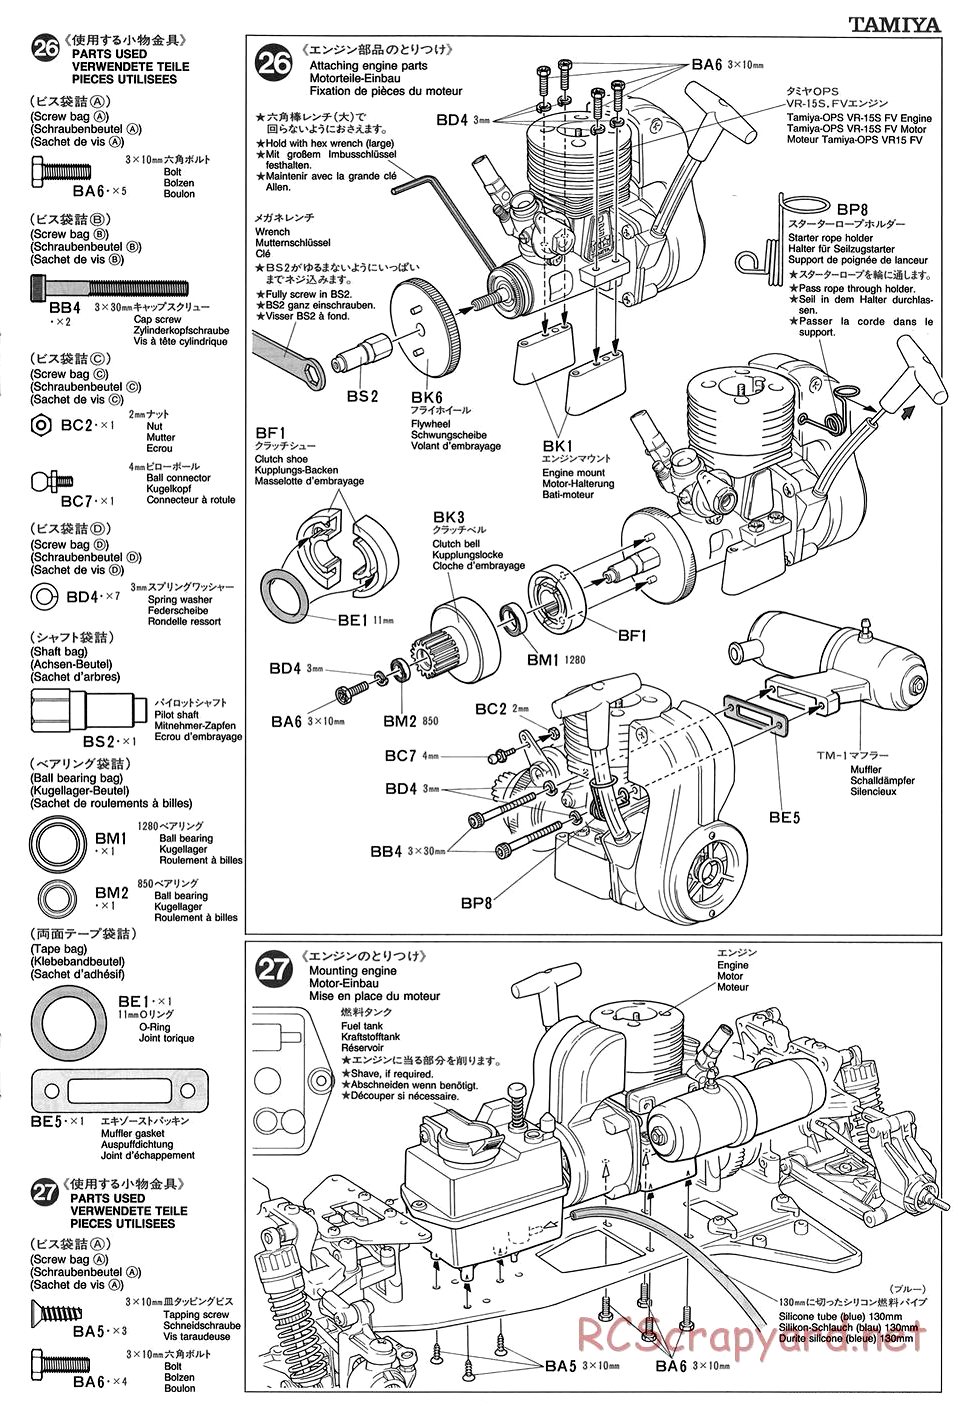 Tamiya - TGX Mk.1 Chassis - Manual - Page 13